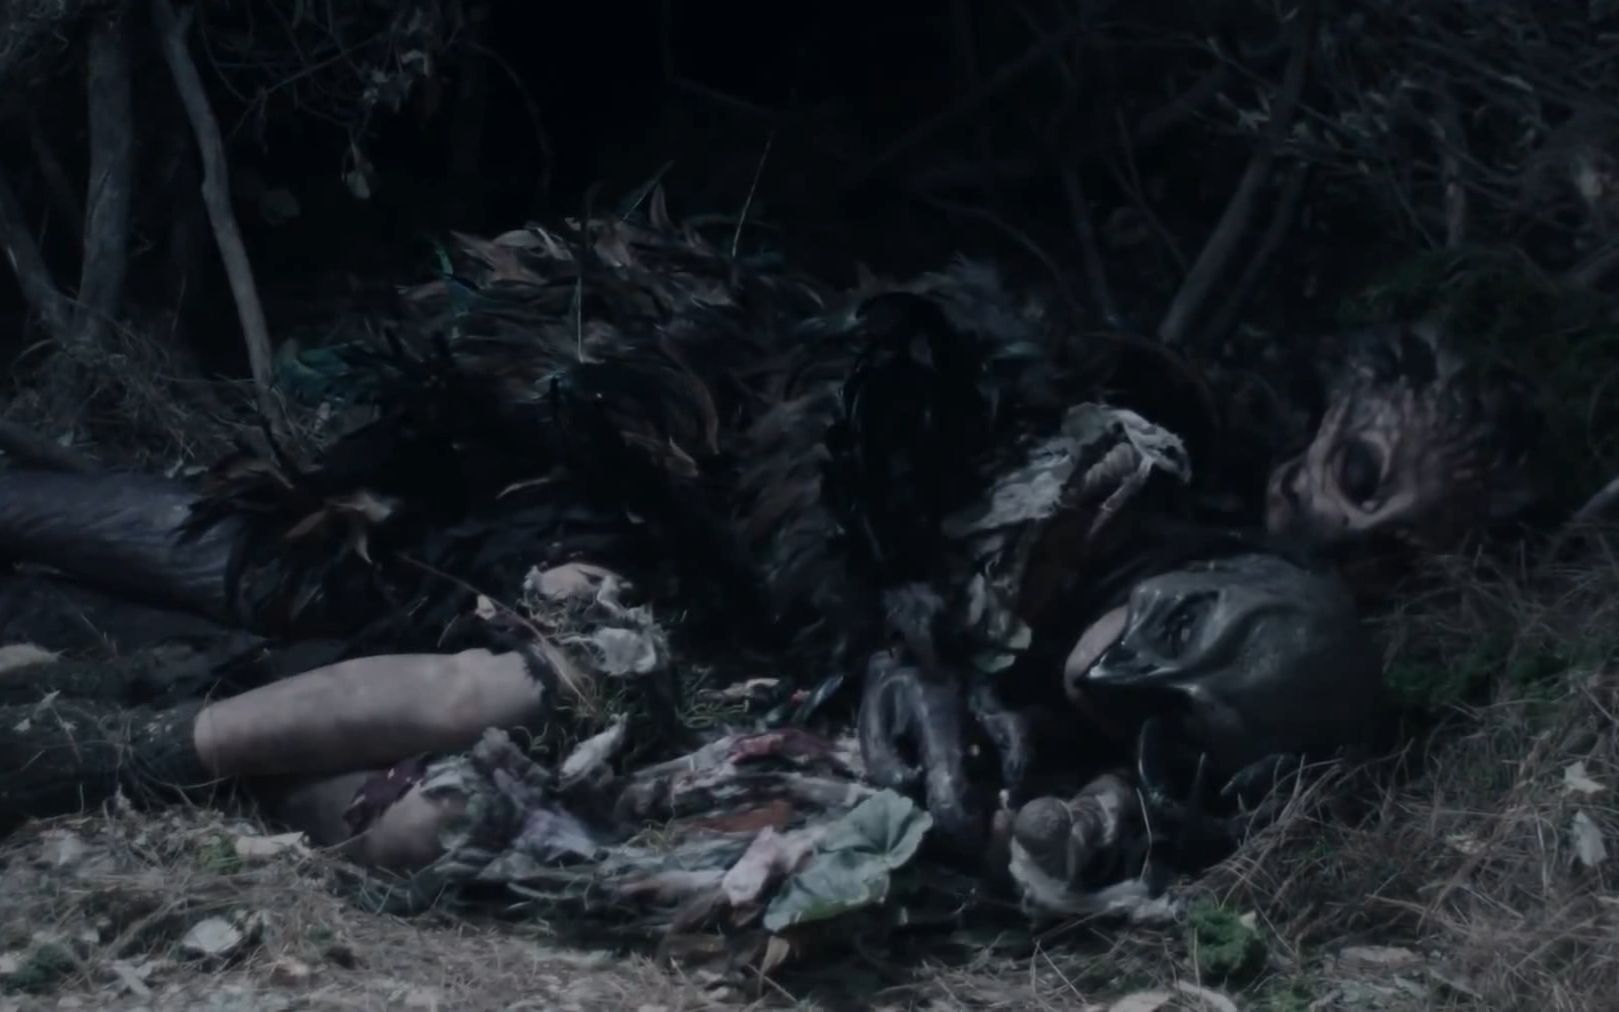 恐怖片《鸟人》:漂亮女人怀孕后被怪物抓进洞穴,从此悲剧了